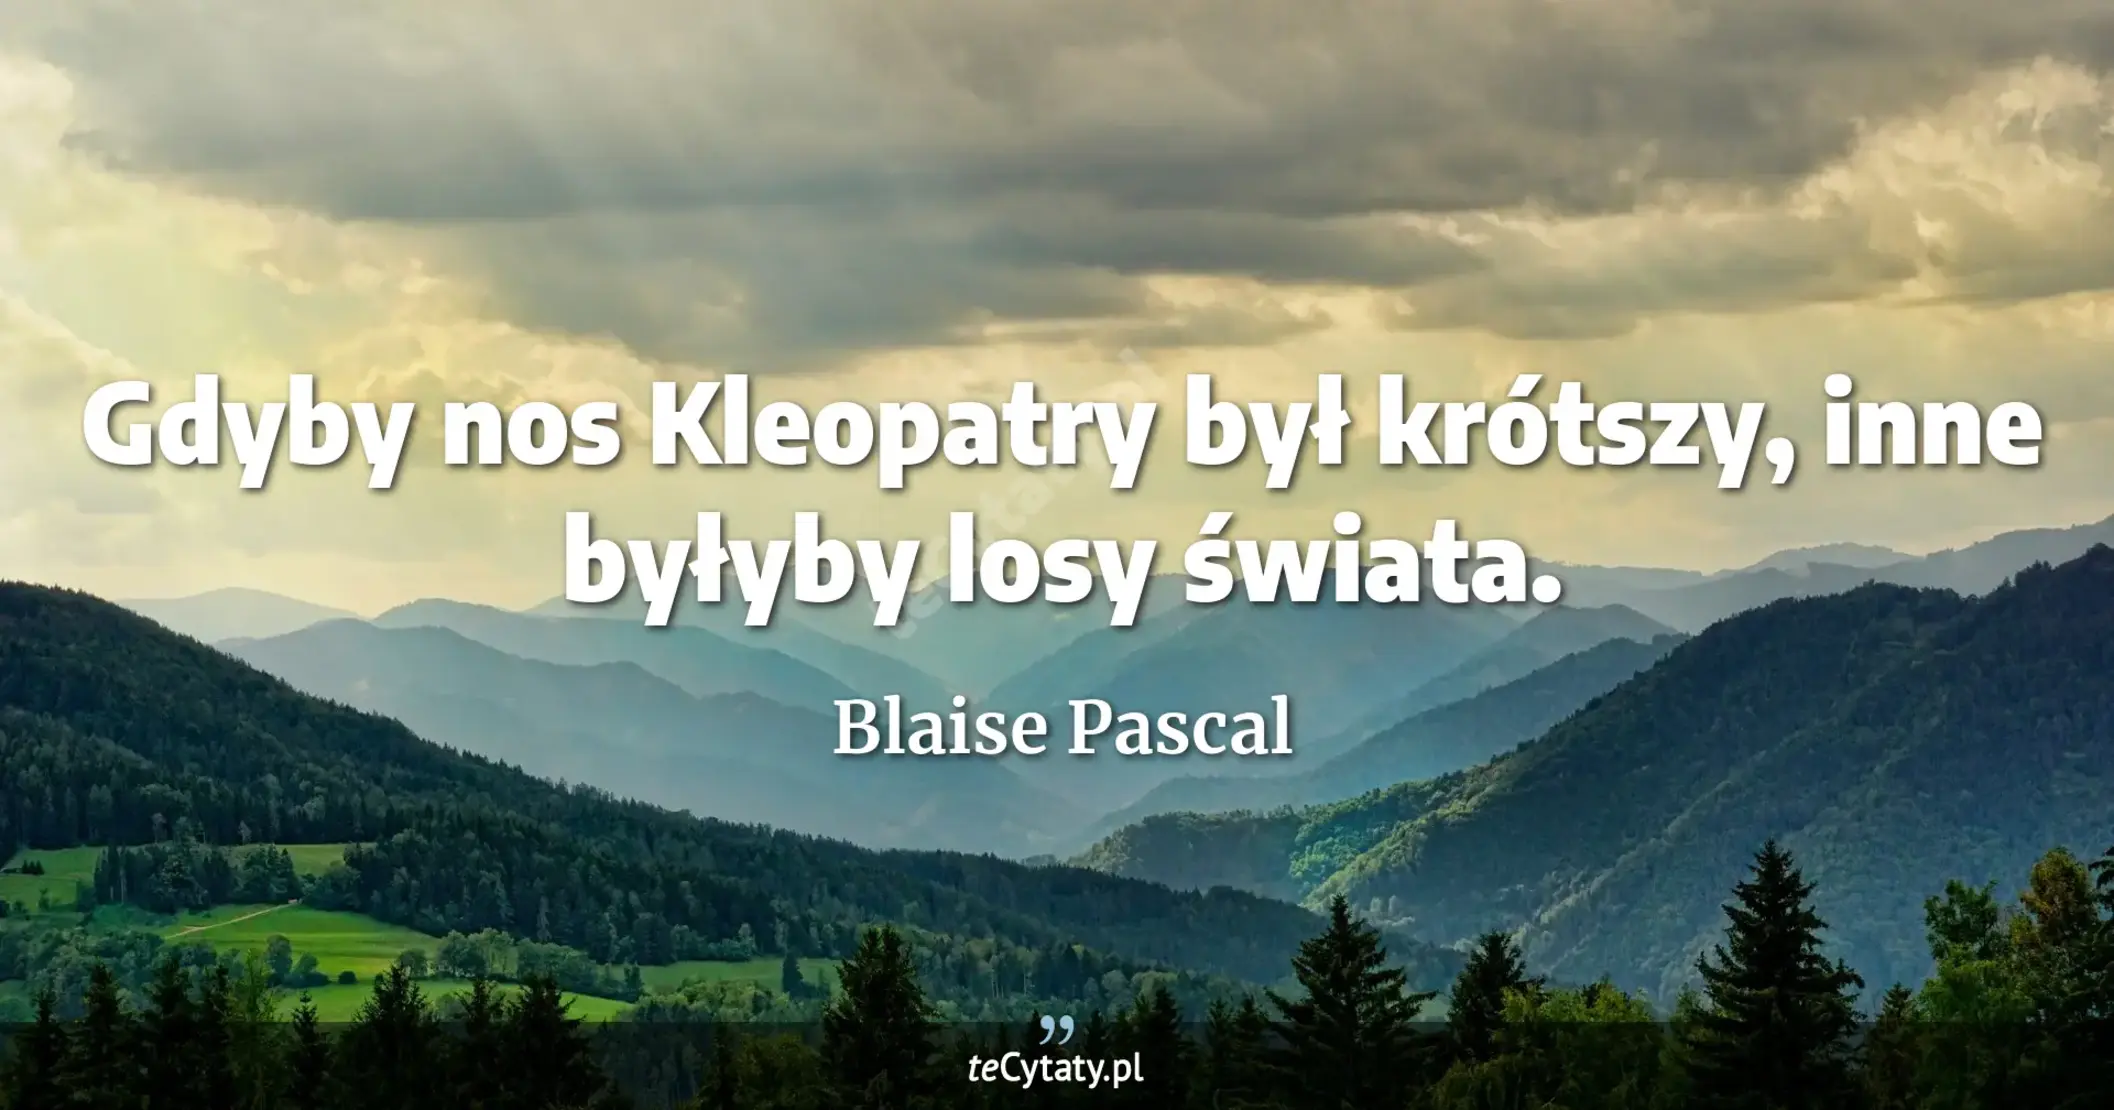 Gdyby nos Kleopatry był krótszy, inne byłyby losy świata. - Blaise Pascal